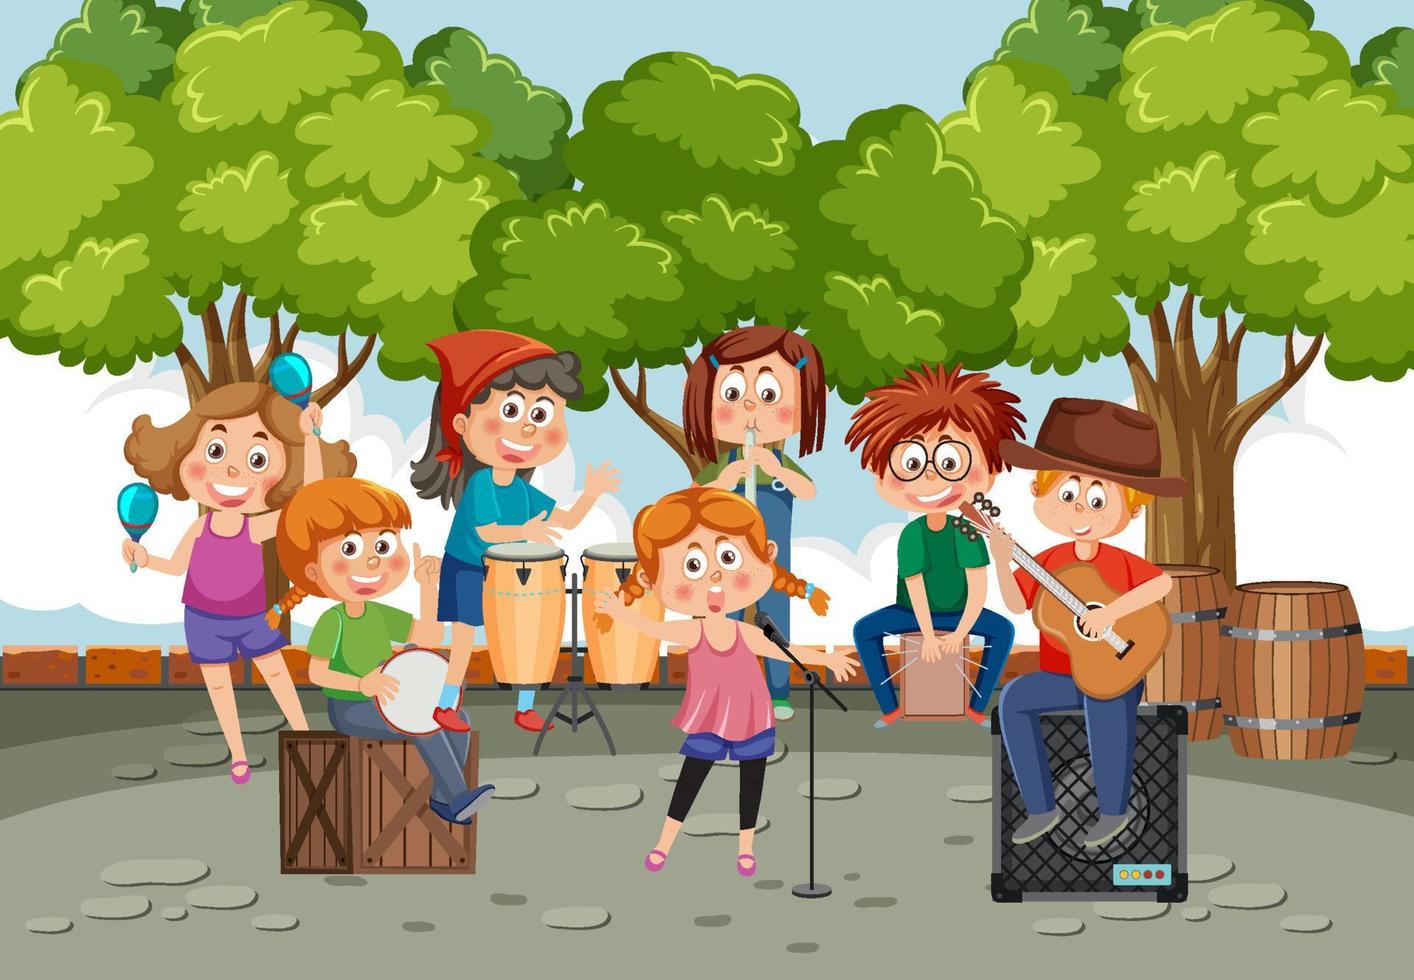 bambini musica gruppo musicale giocando a parco vettore